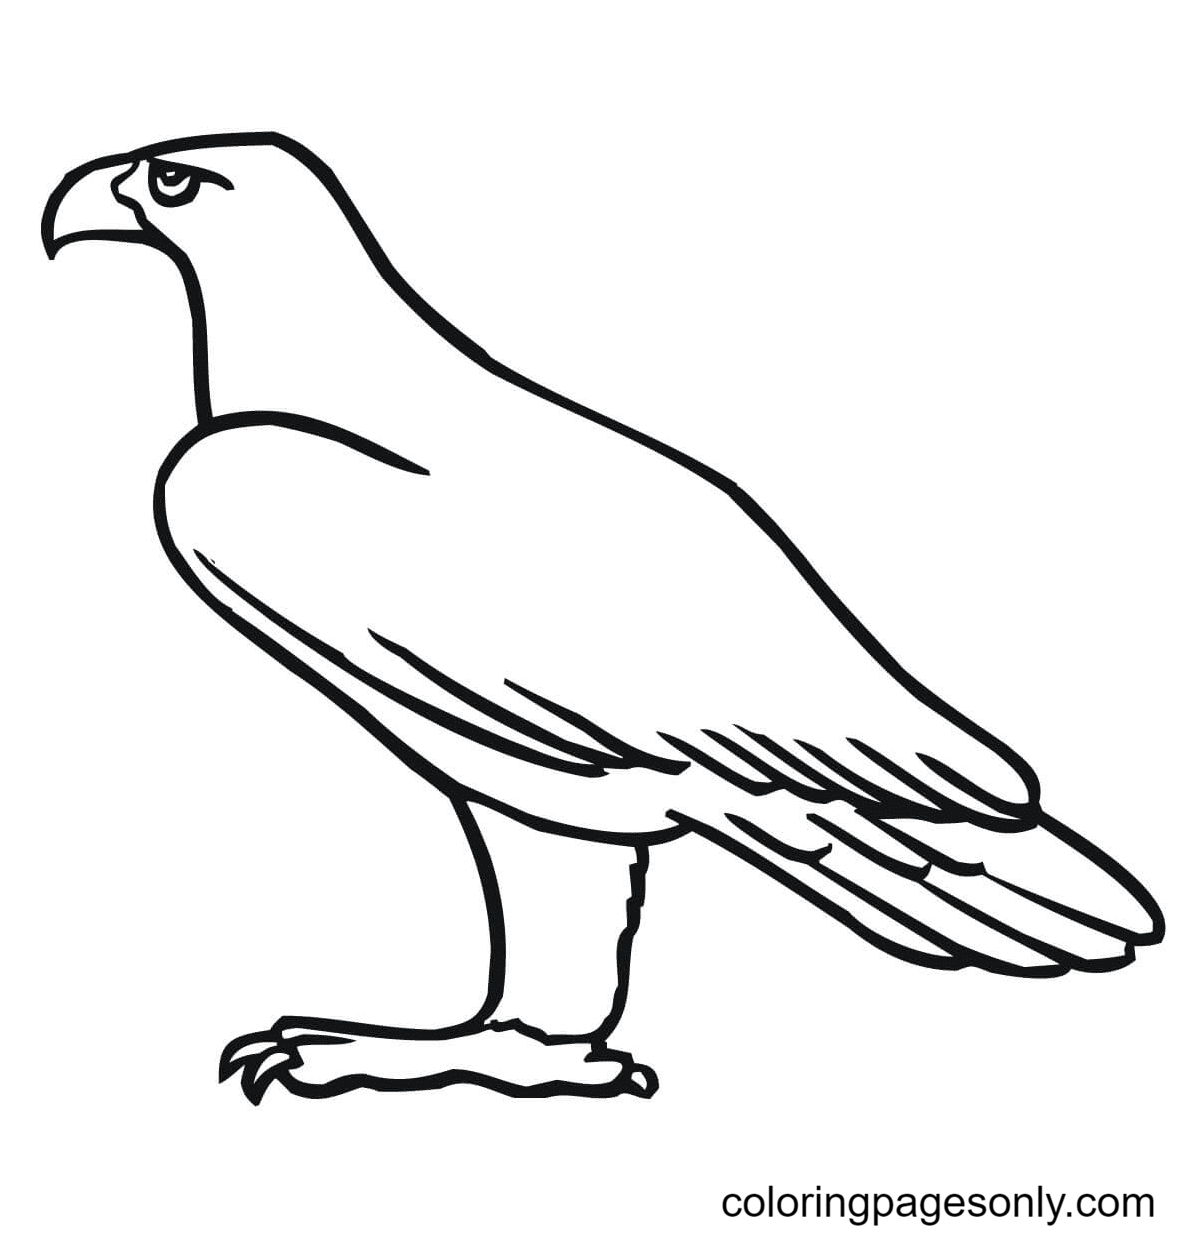 Águila real de Eagle